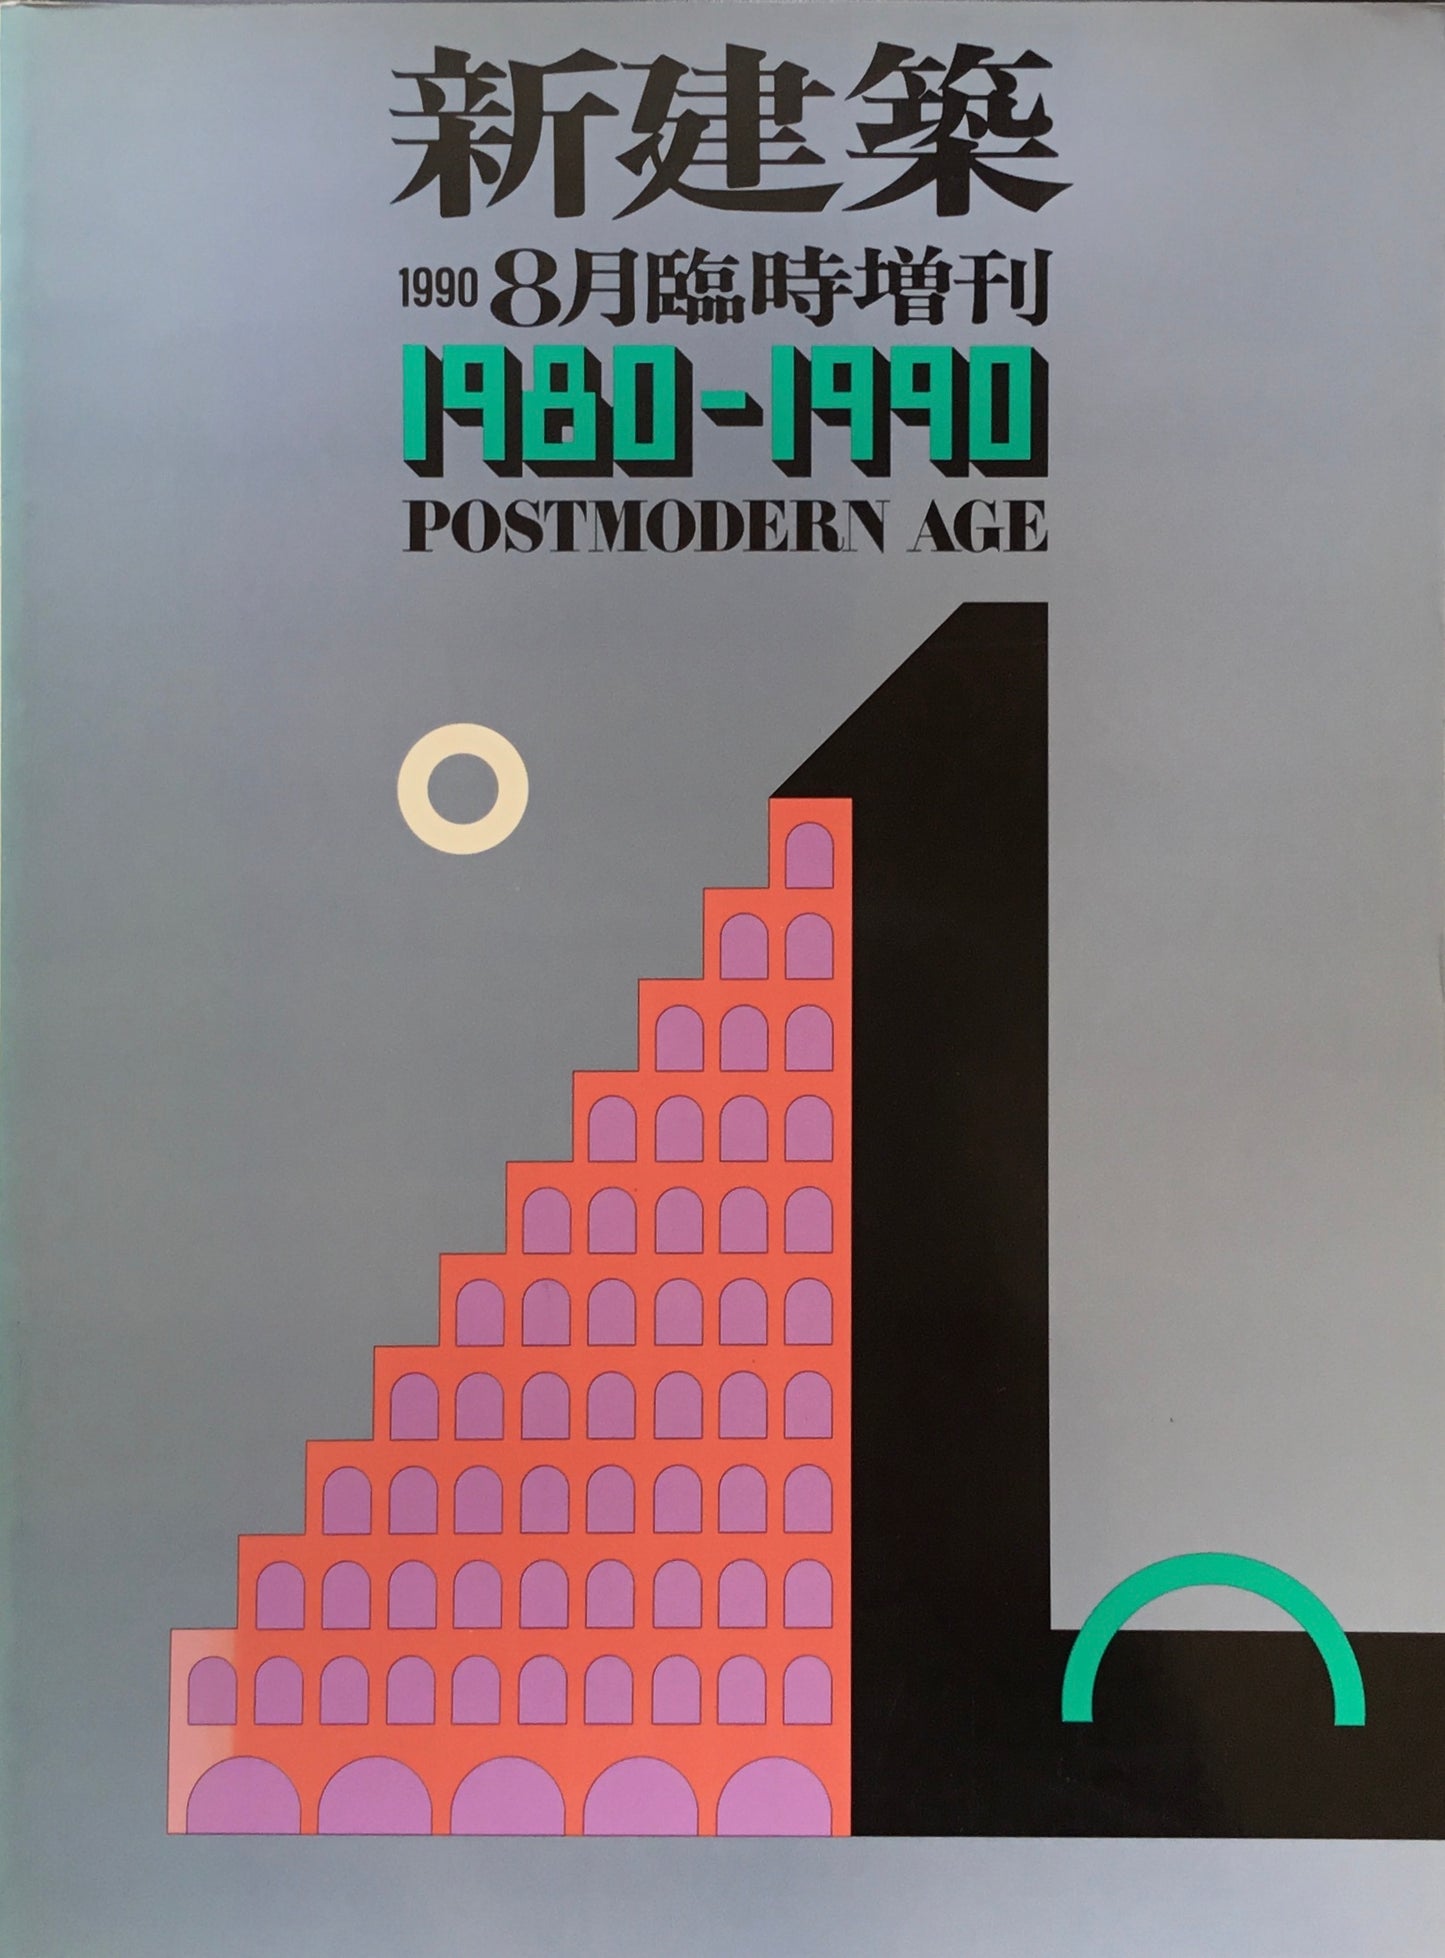 新建築　1990年8月臨時増刊号　1980-1990　POSTMODERN AGE